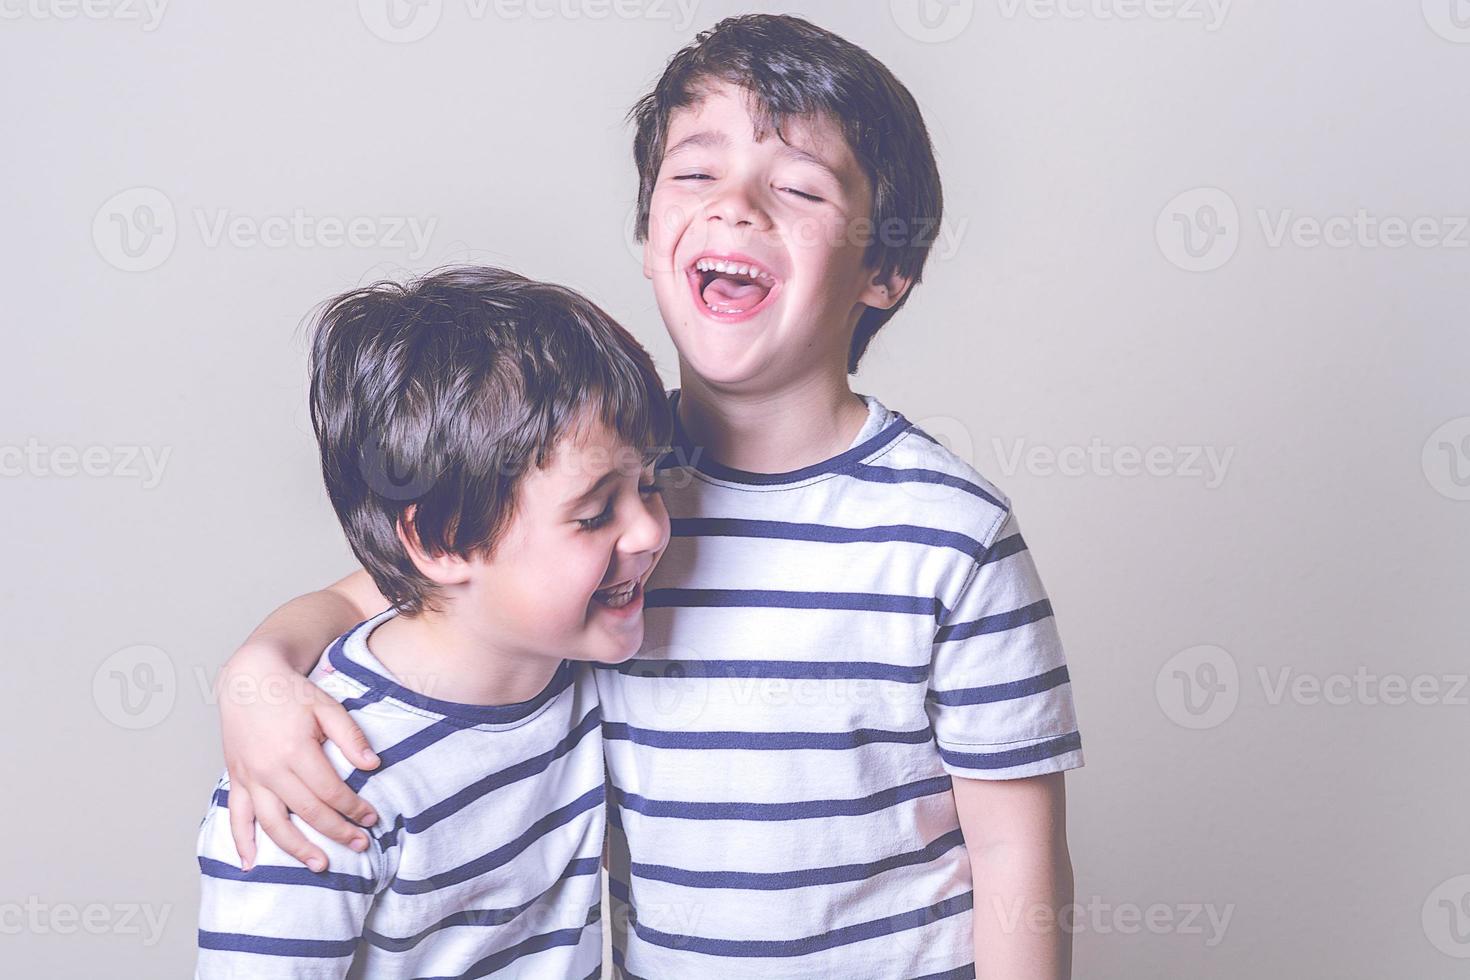 glada och leende bröder foto